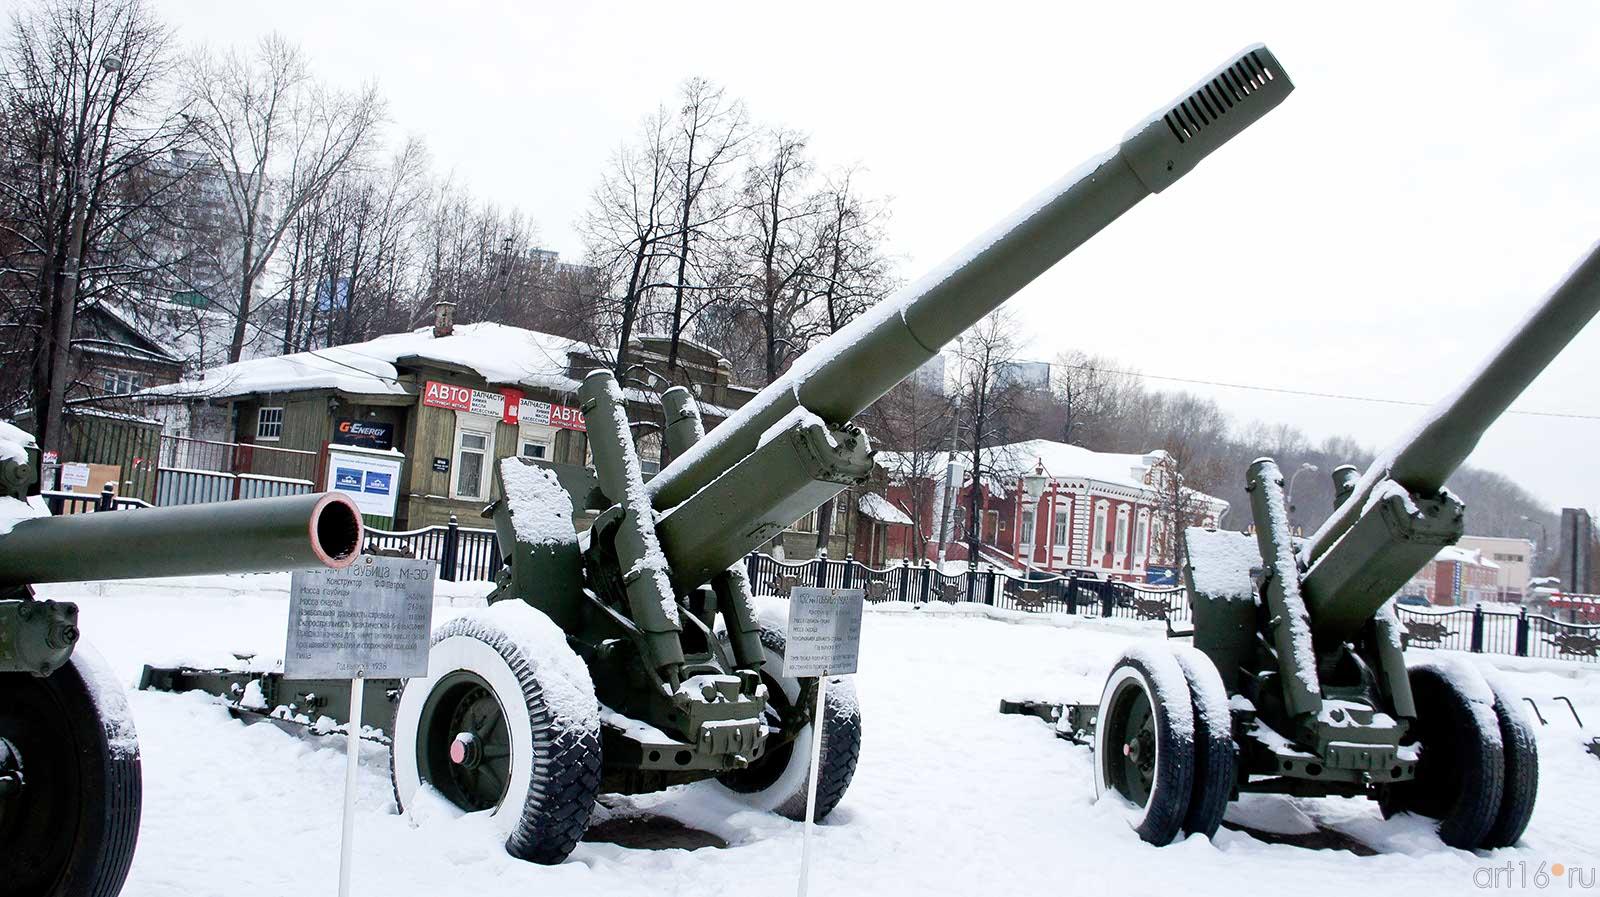 122 мм гаубица М-30 Конструктор ф.ф. Петров, Год выпуска 1938.::Мотовилиха